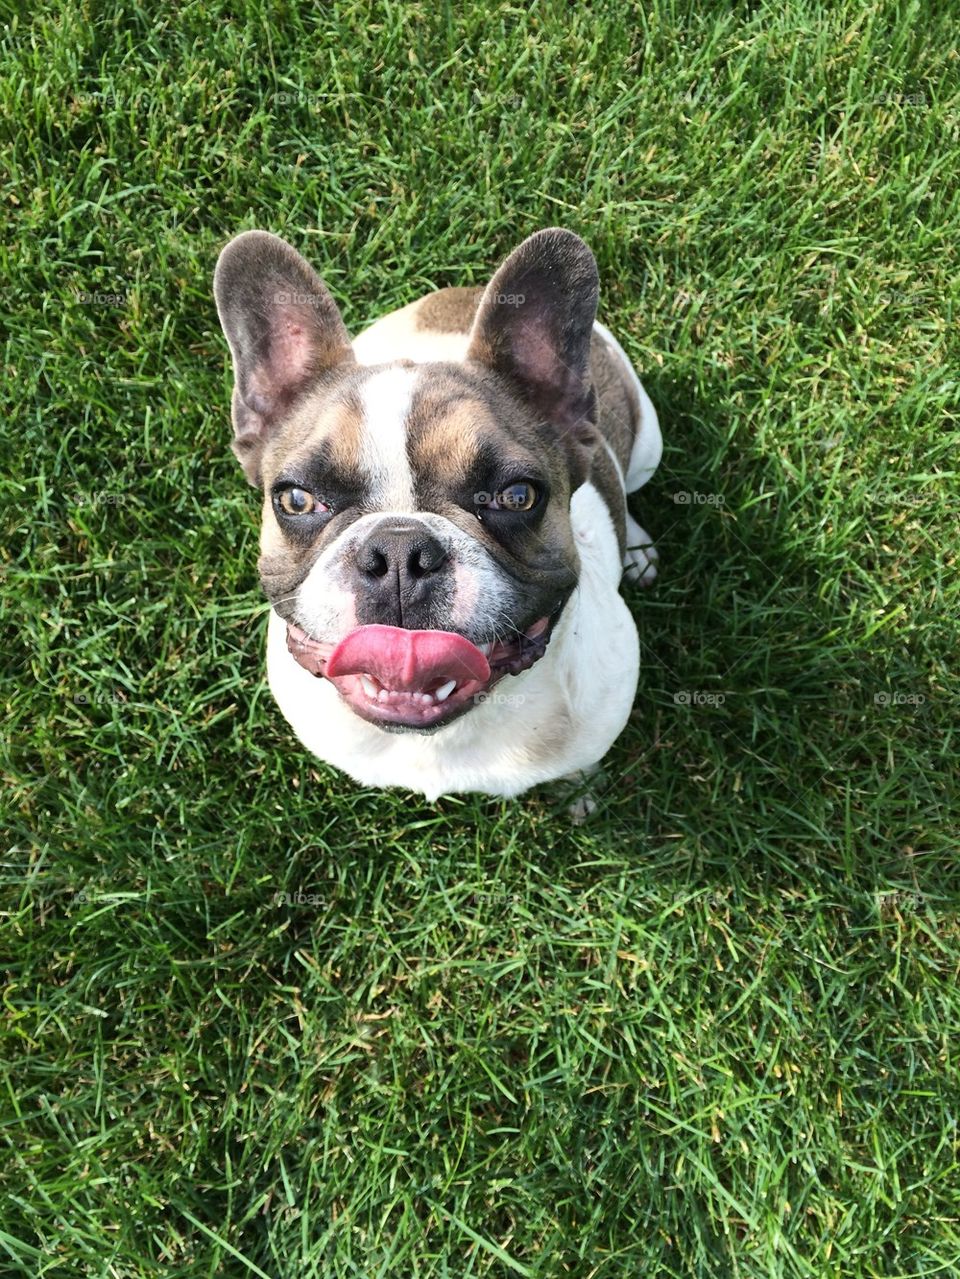 Frankie's tongue